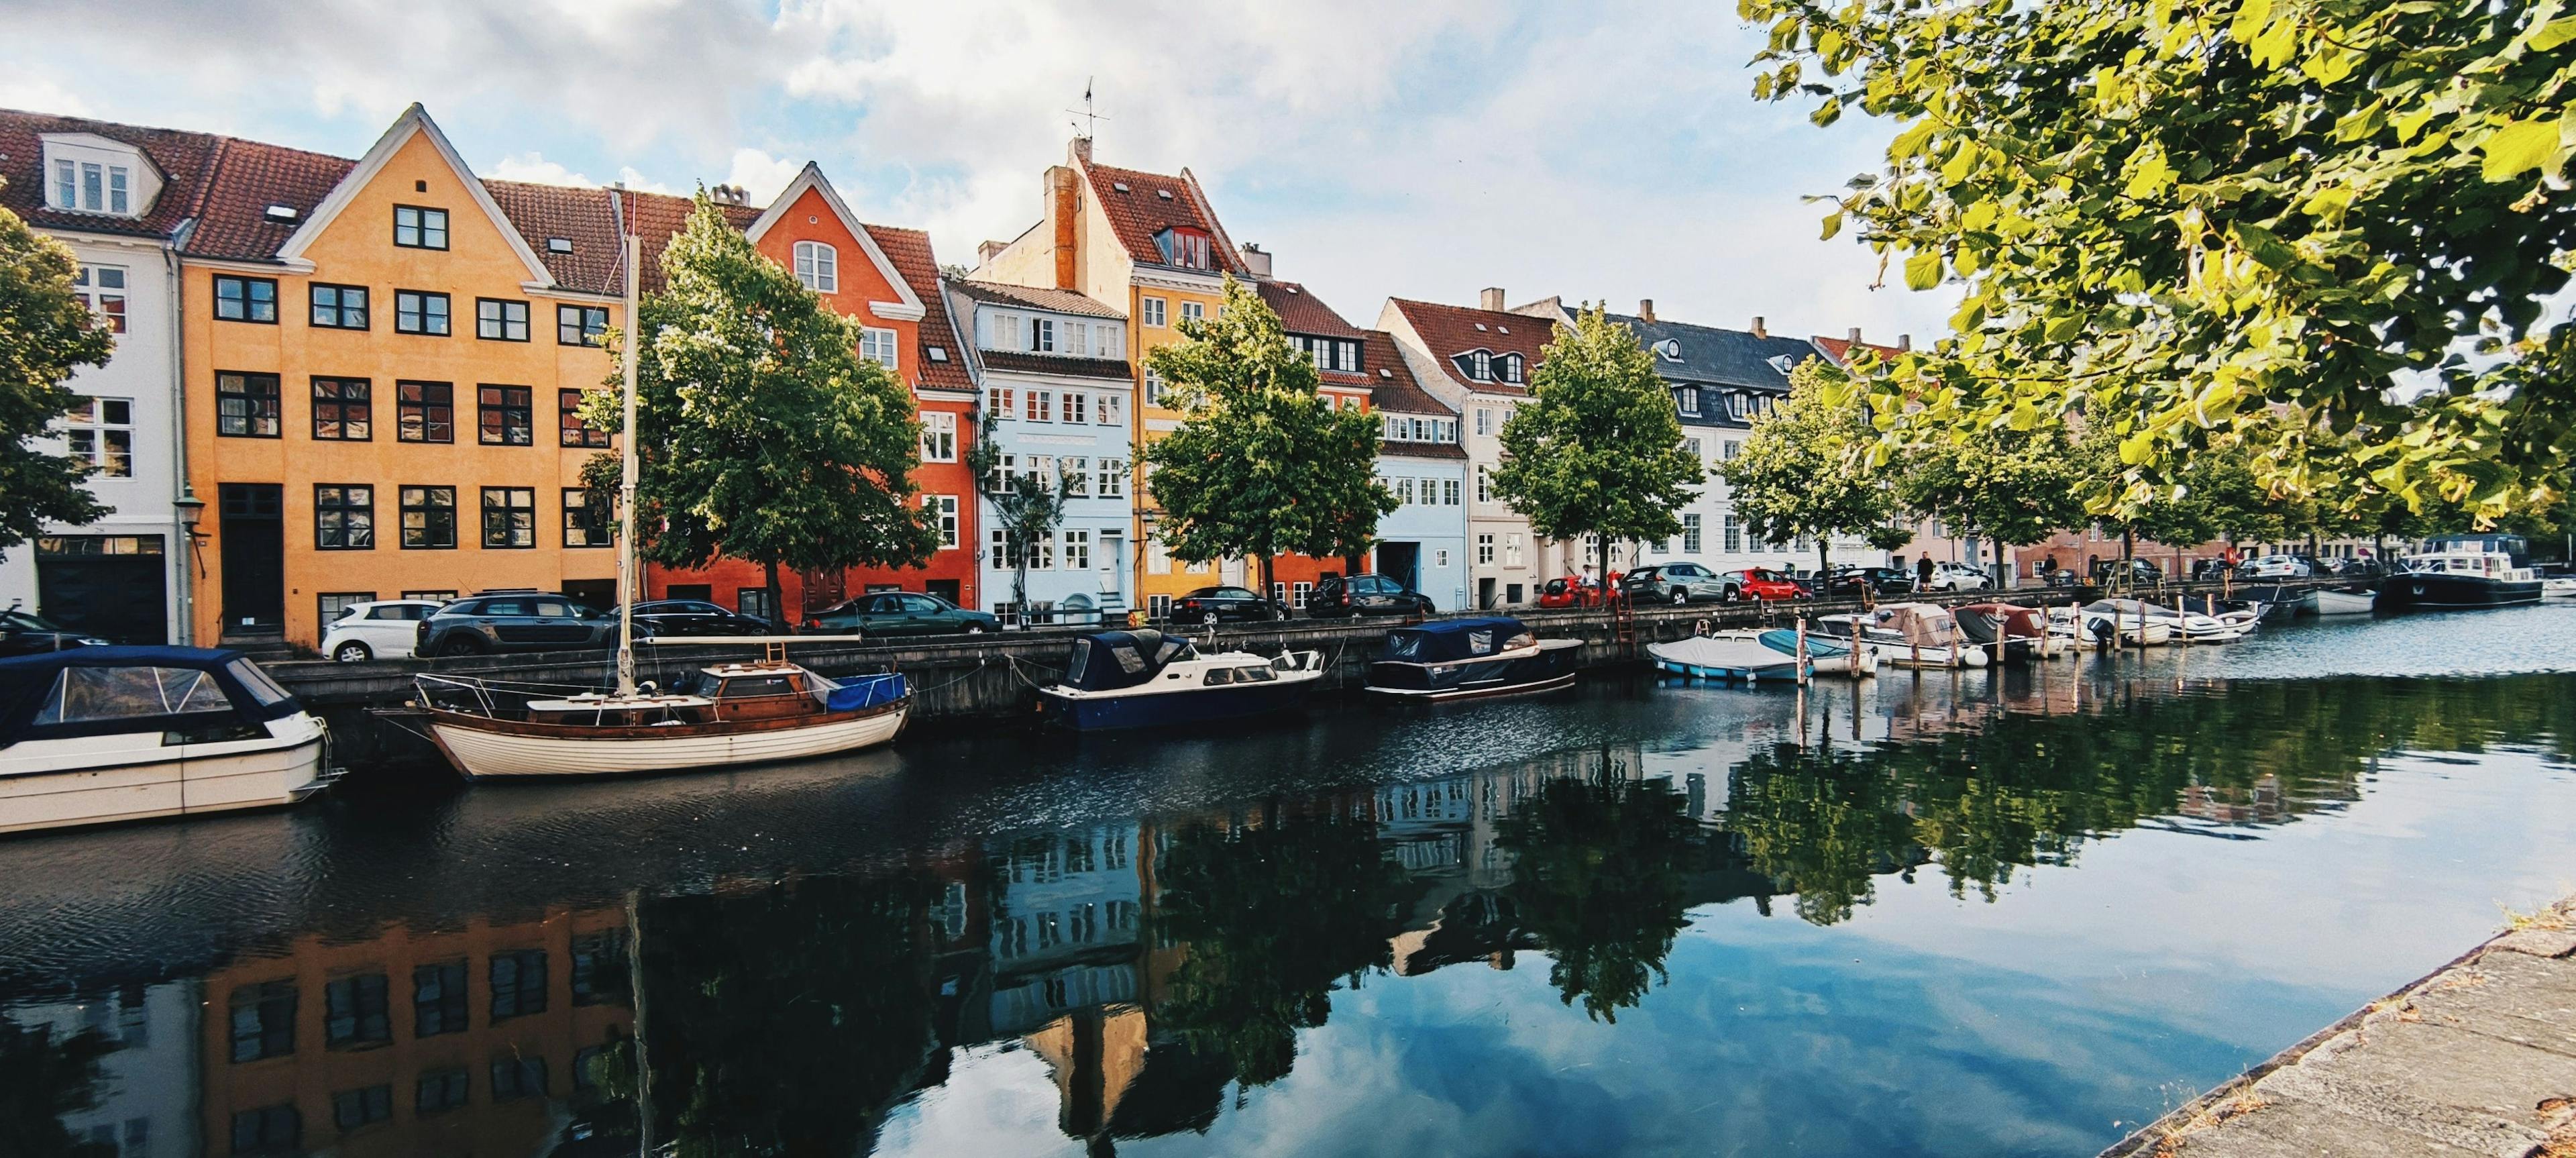 Boats docked in the channel of Christianshavn in Copenhagen.